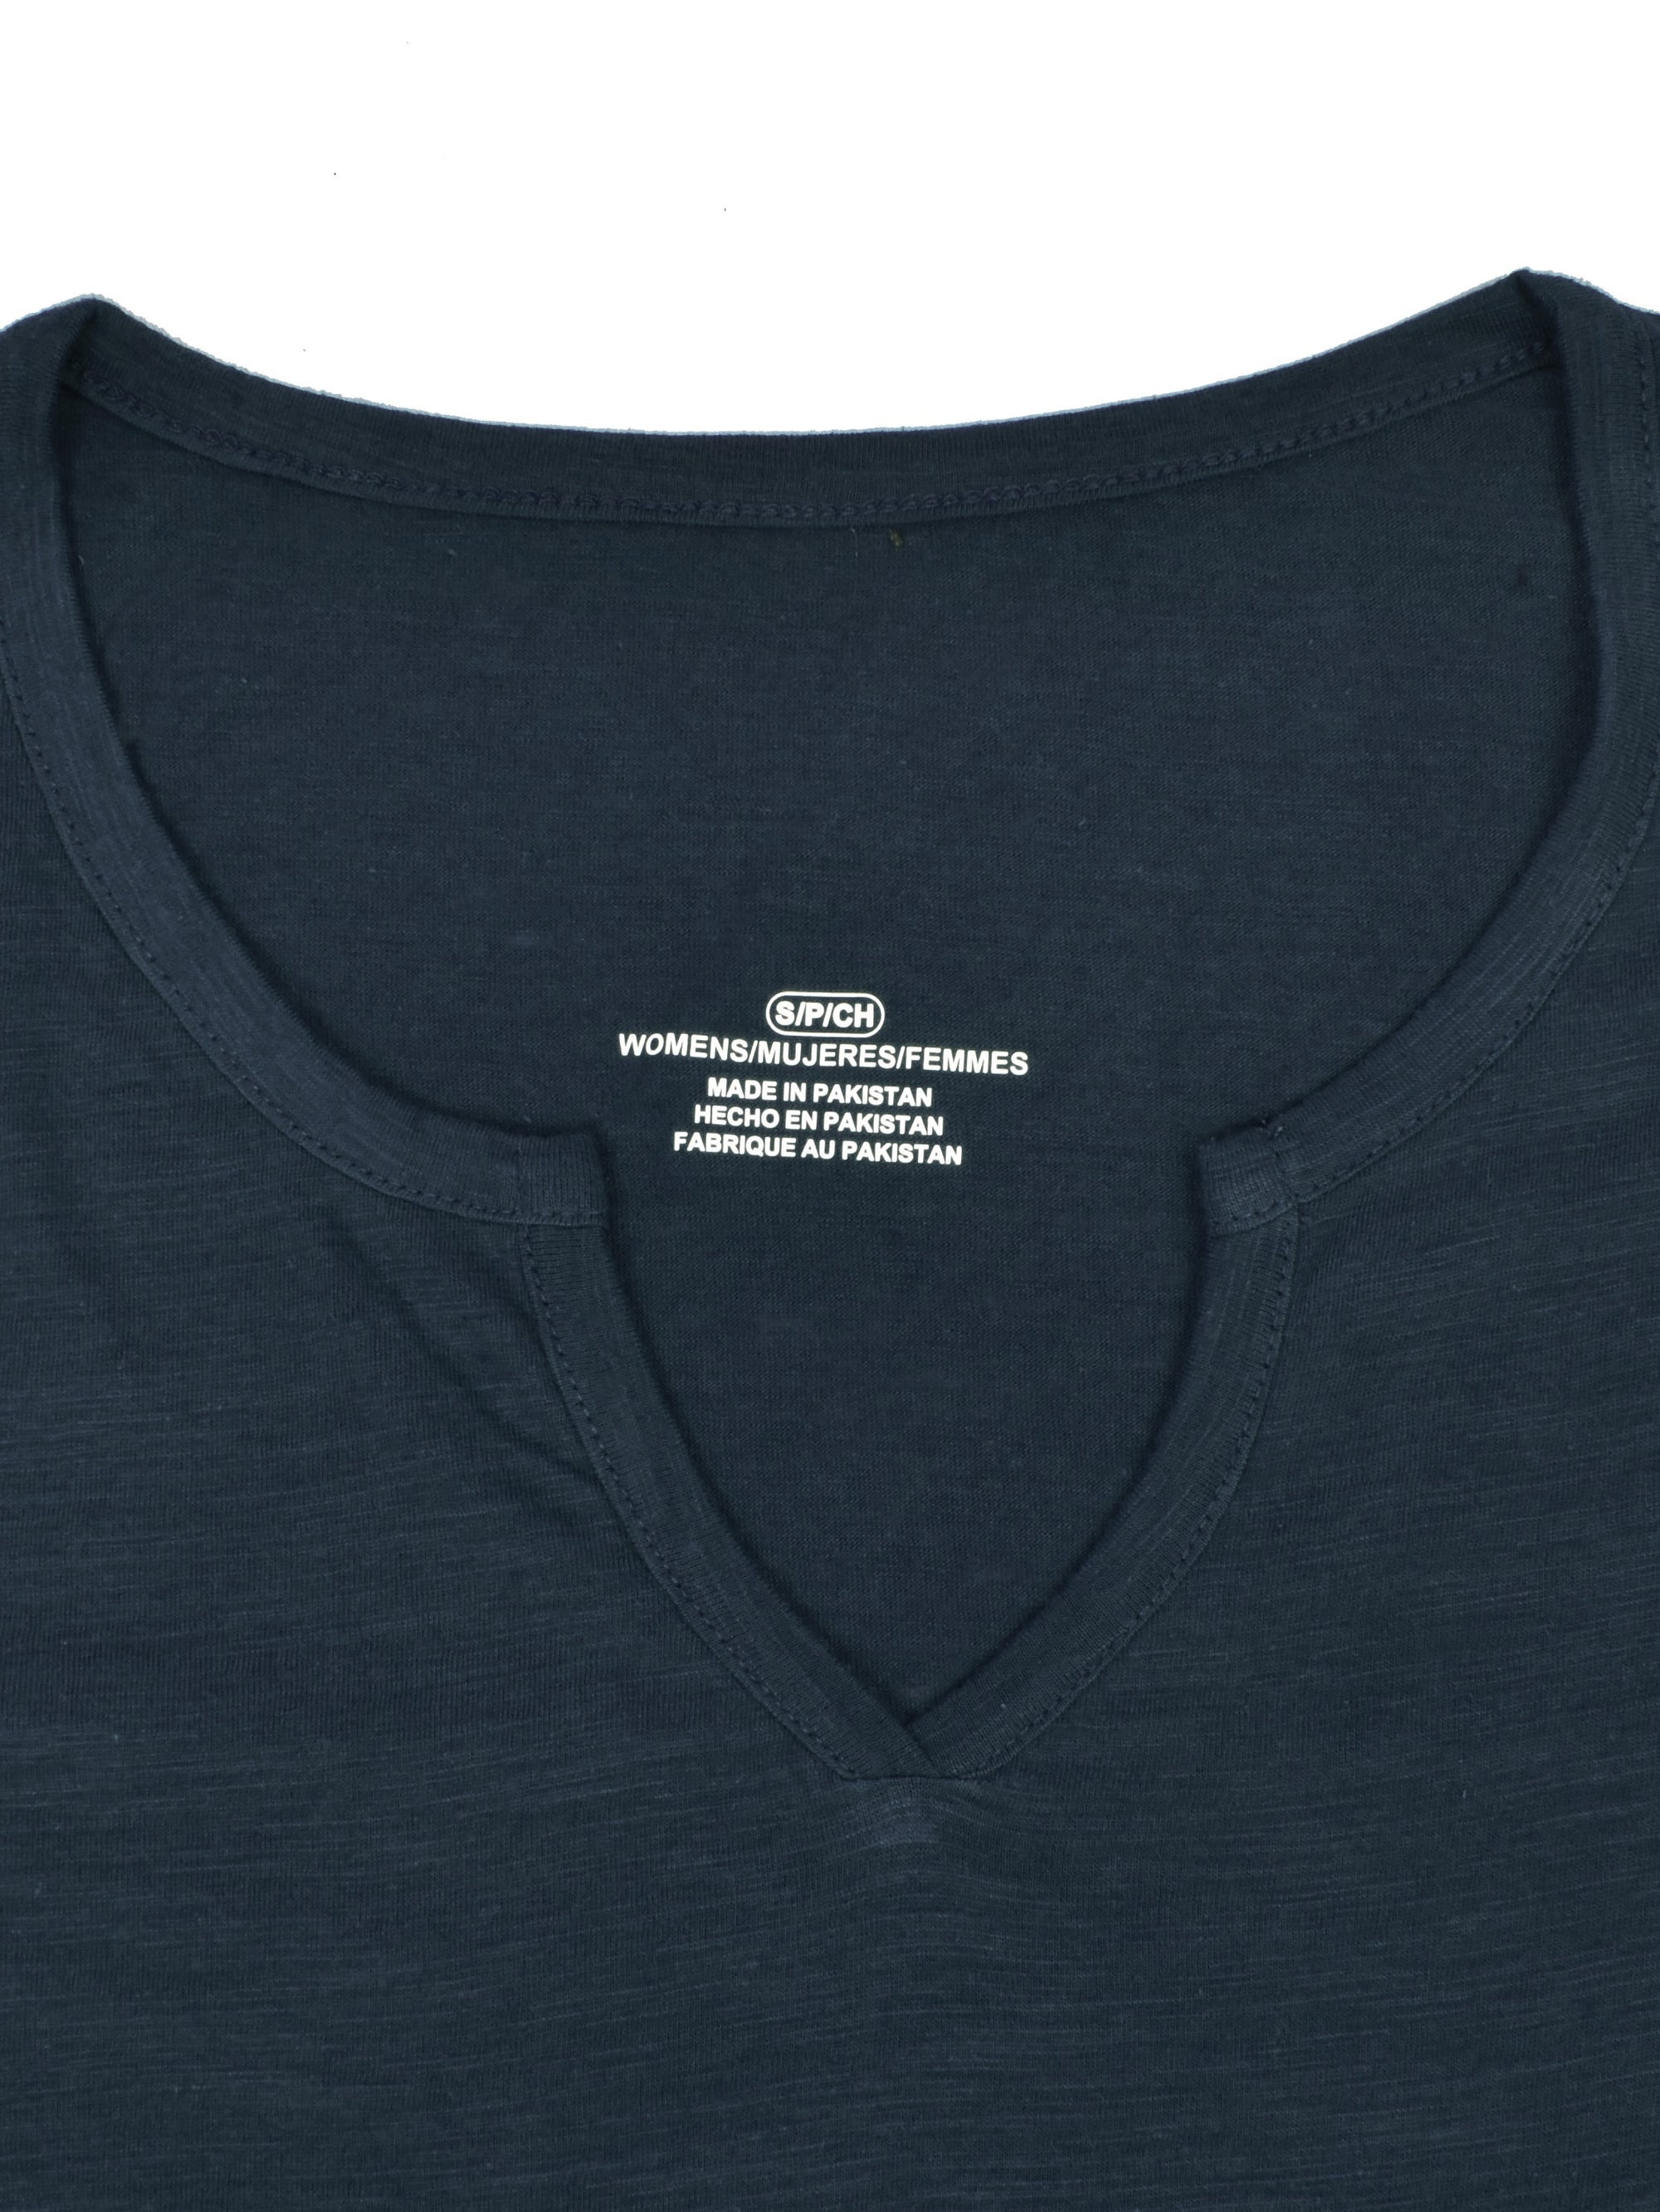 Majestic V Neck Half Sleeve Tee Shirt For Ladies-Navy Melange-SP1966